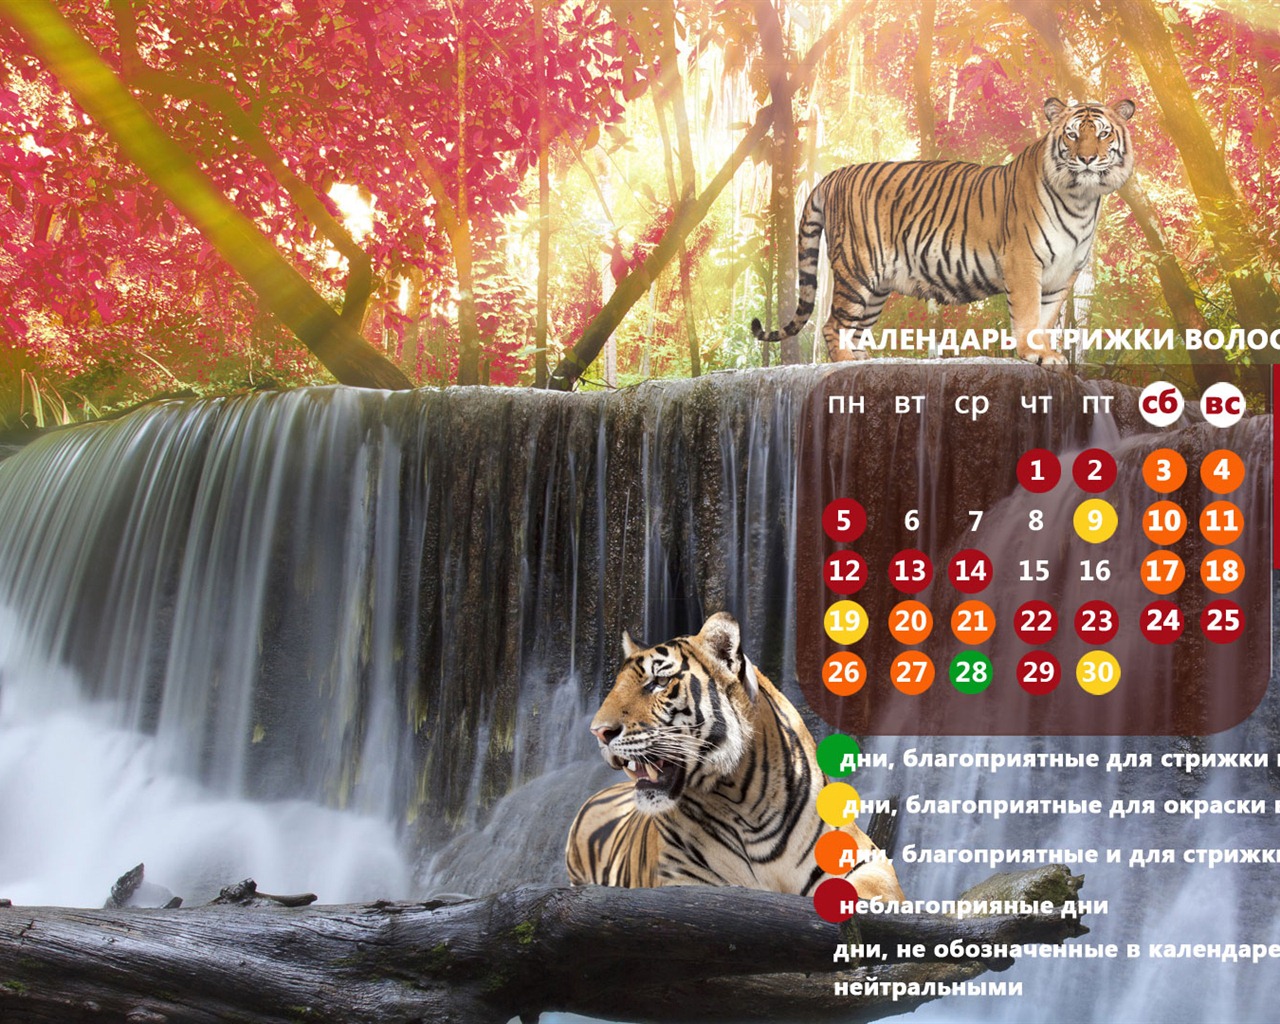 Novembre 2012 Calendar Wallpaper (2) #18 - 1280x1024